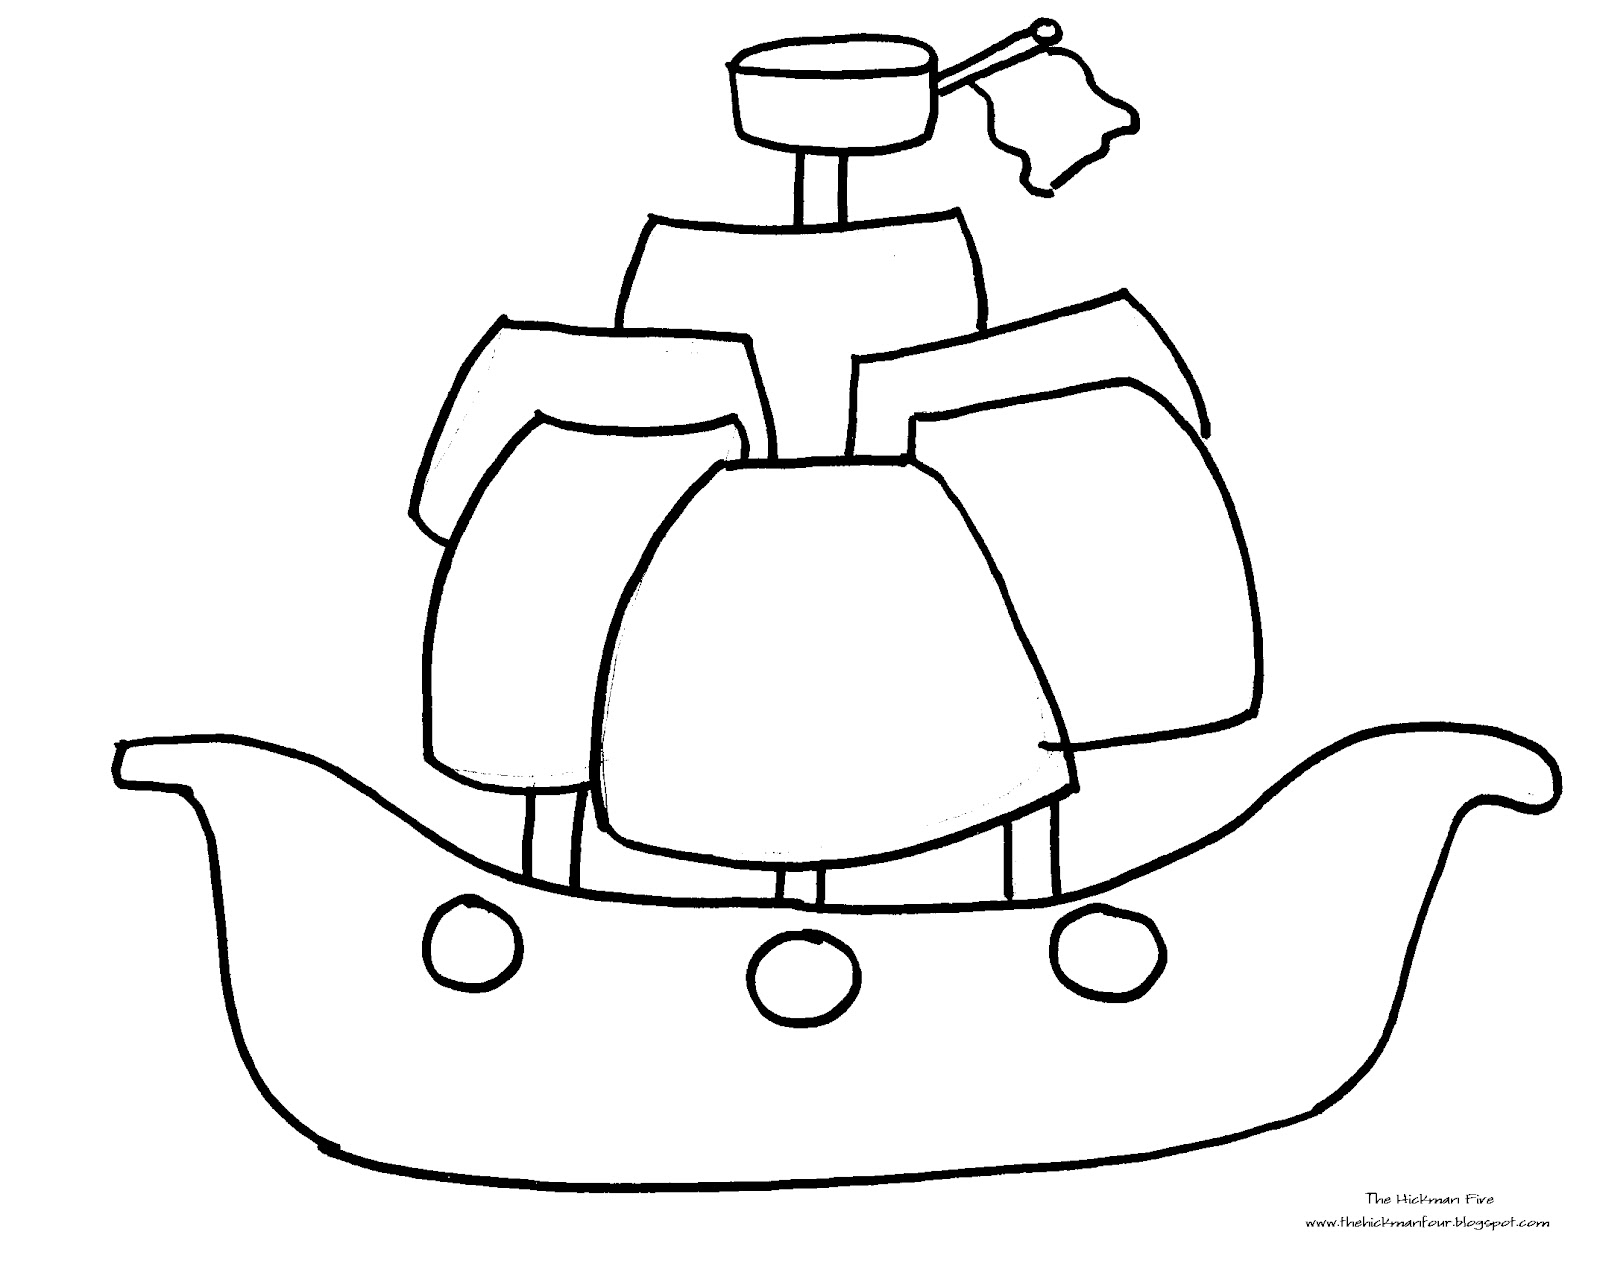 Dessin #15904 - dessin de bateau pirate gratuit a imprimer et colorier